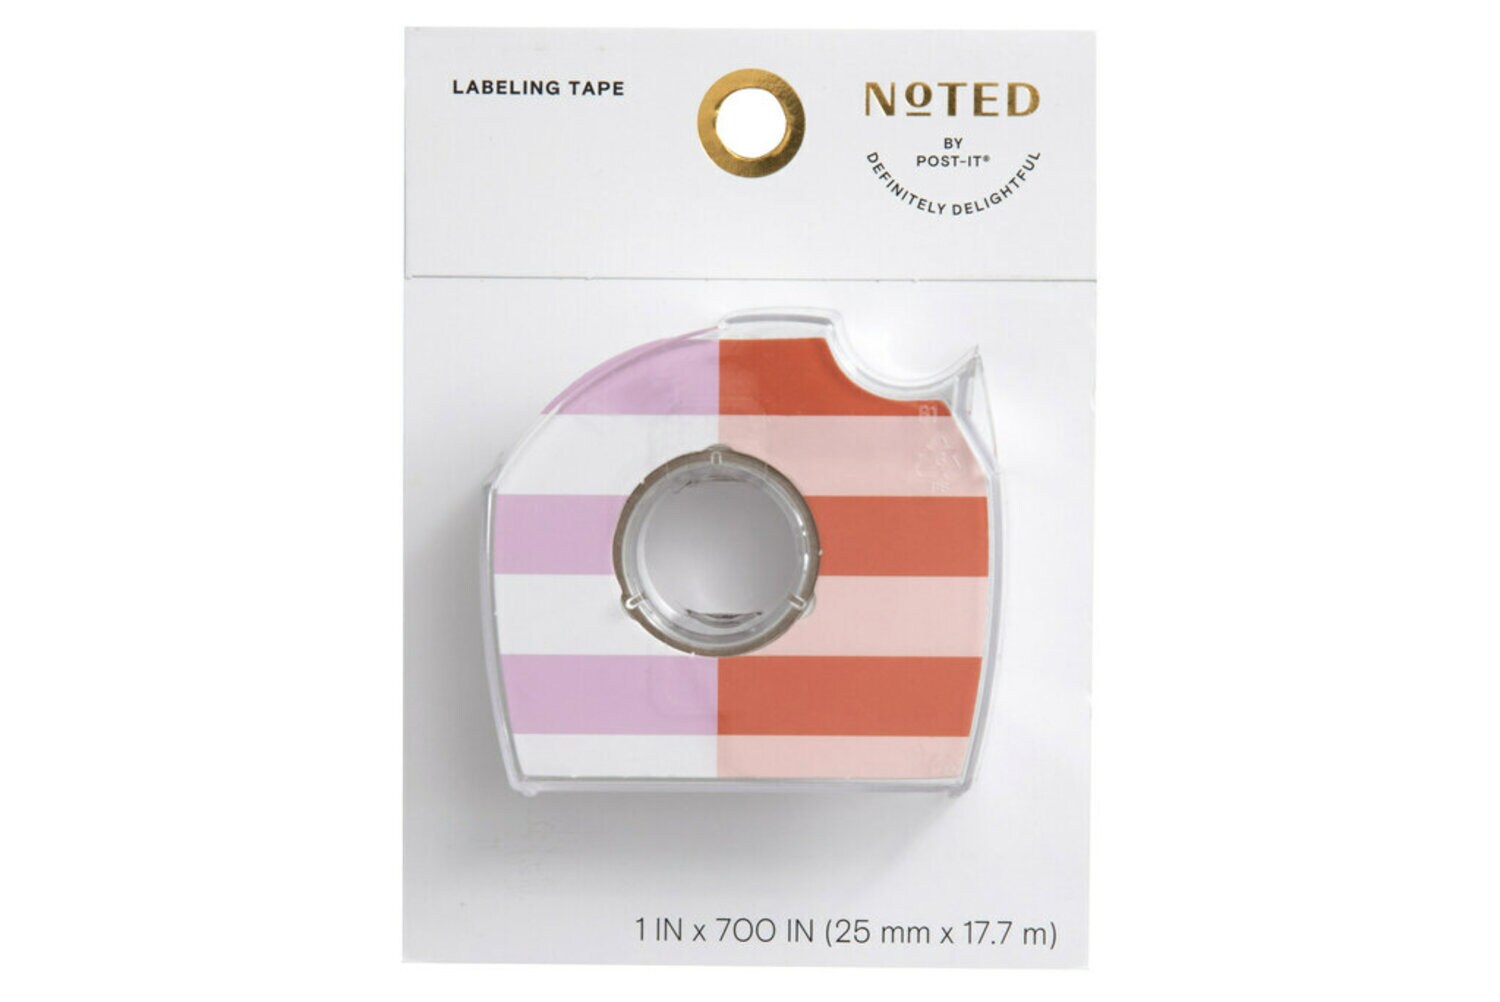 7100274120 - Post-it Labeling Tape NTD6-LTAPE2, 1 in x 700 in (25.4 mm x 17.7 m)